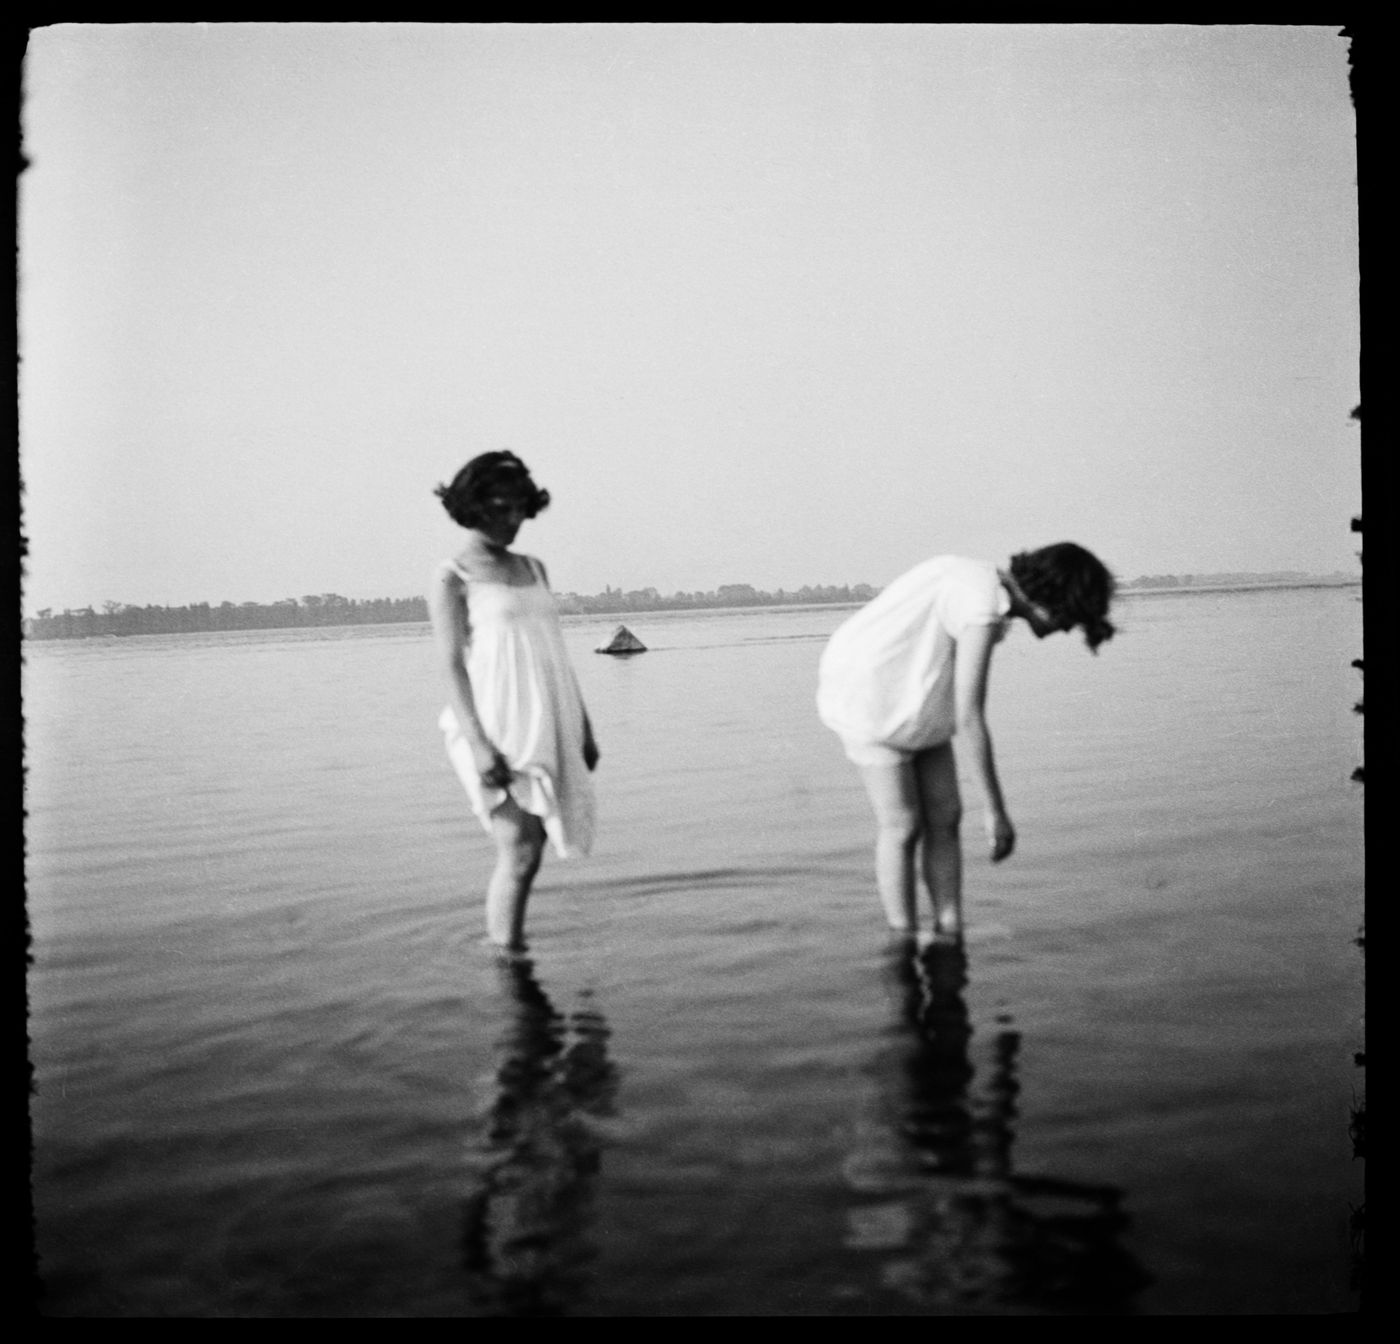 Portrait de deux femmes non identifiées, possiblement Clorinthe et Cécile Perron, près de la rive d'une étendue d'eau